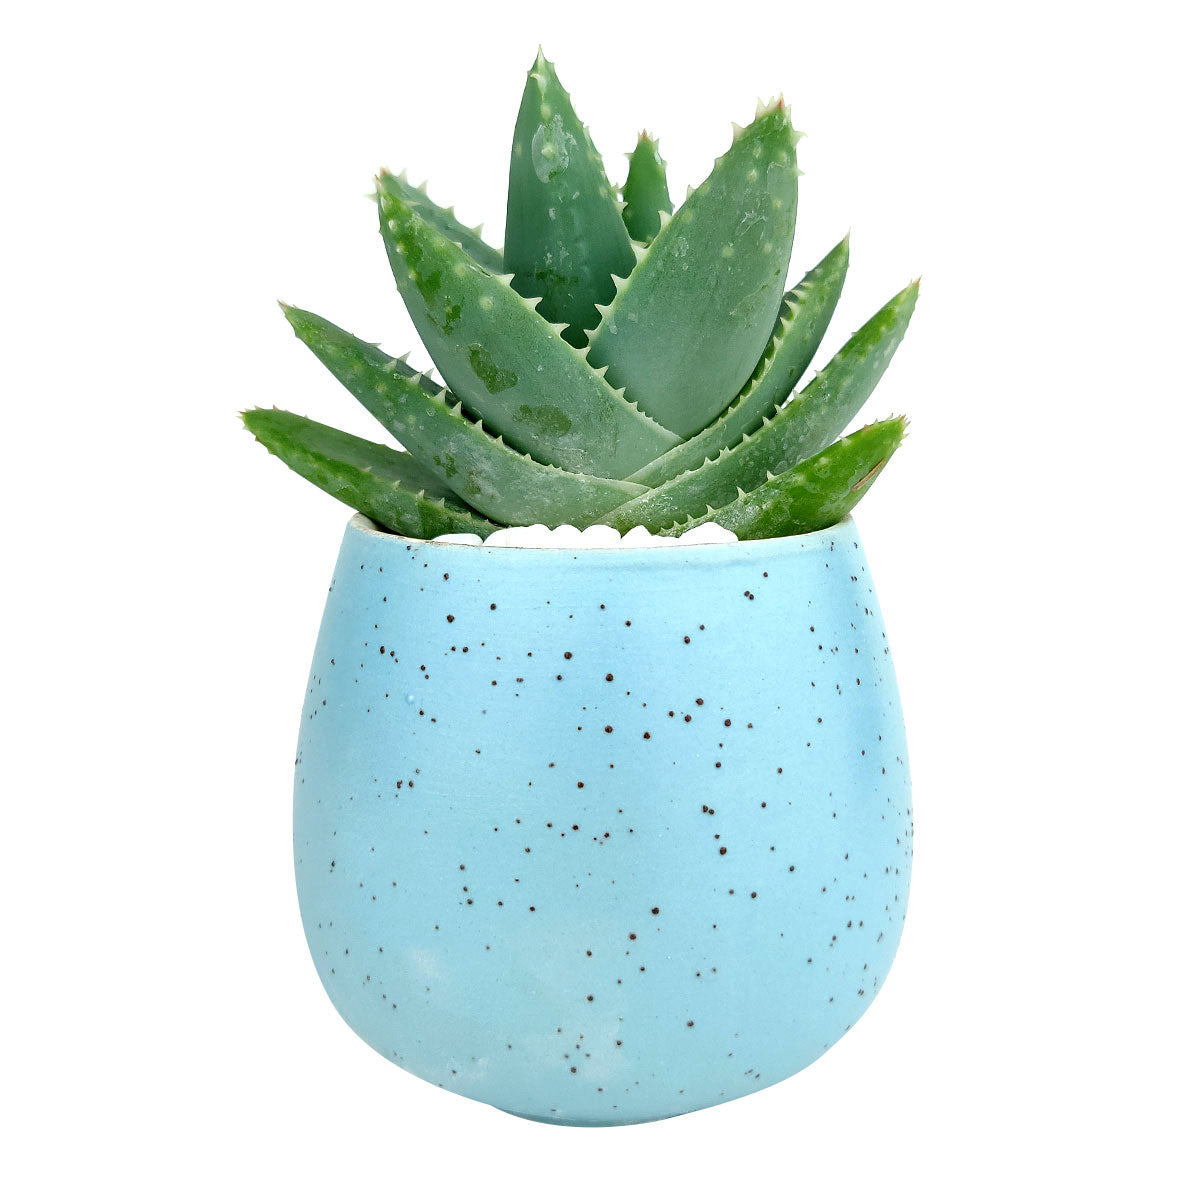 Blue Egg Pot for sale, Blue Elegant Plain Ceramic Pot for sale, Mini ceramic pot for succulents and cacti, Modern design pot, Succulent and cactus pots for sale, Succulent gift decor ideas, Elegant flower pots